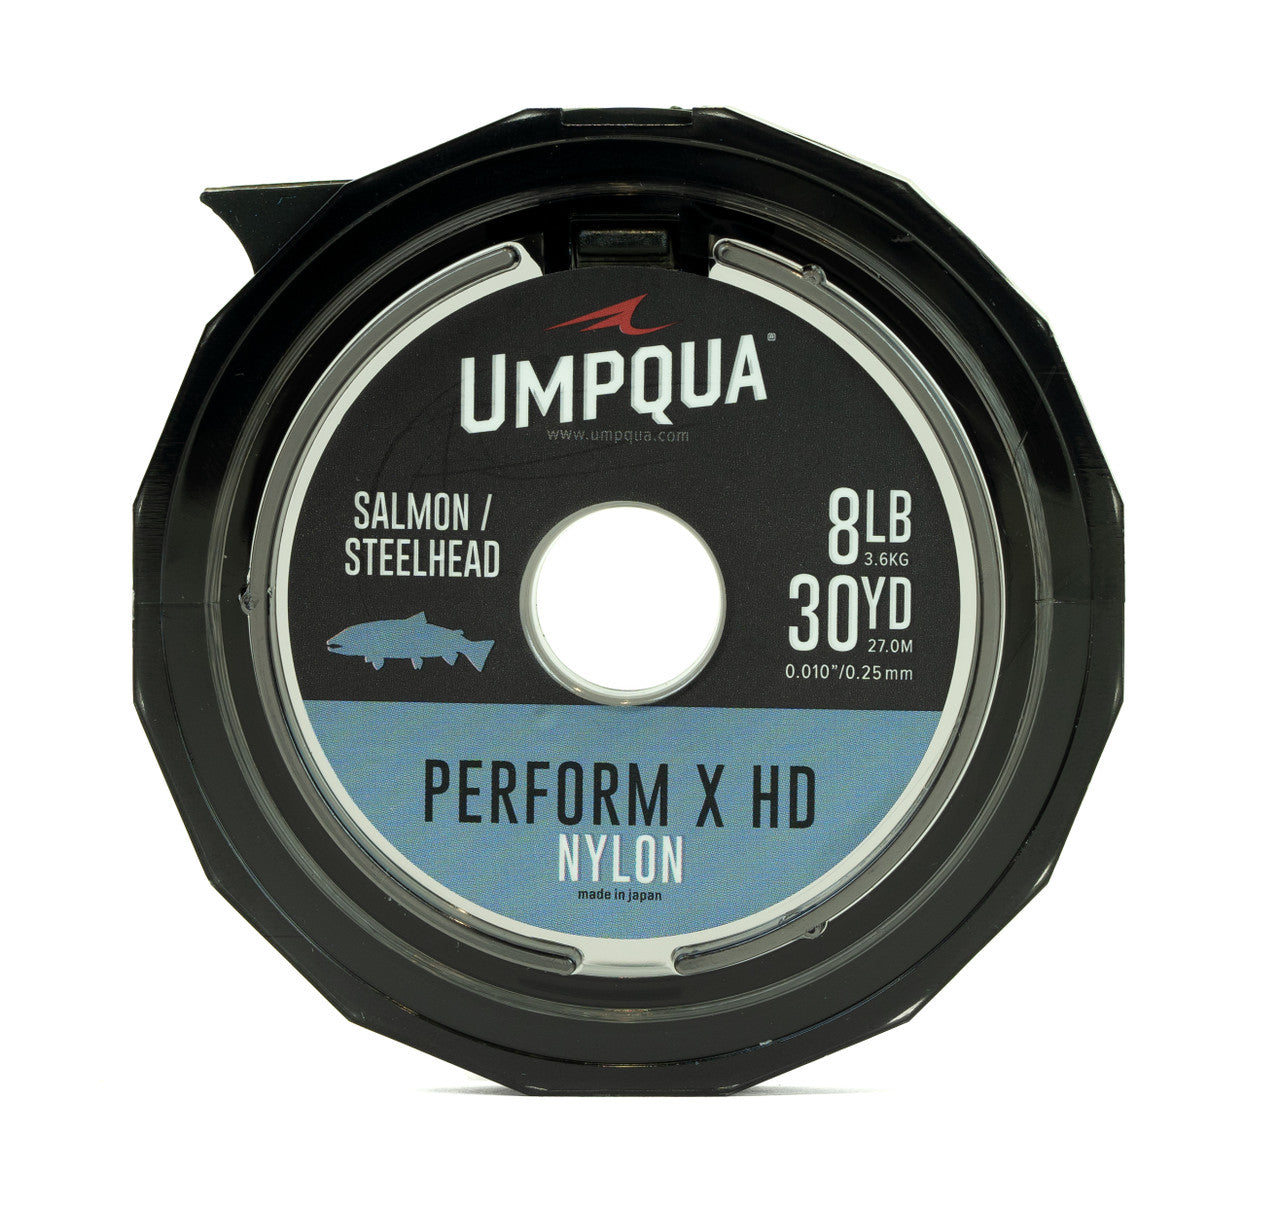 Umpqua Perform X HD Salmon / Steelhead Nylon Tippet